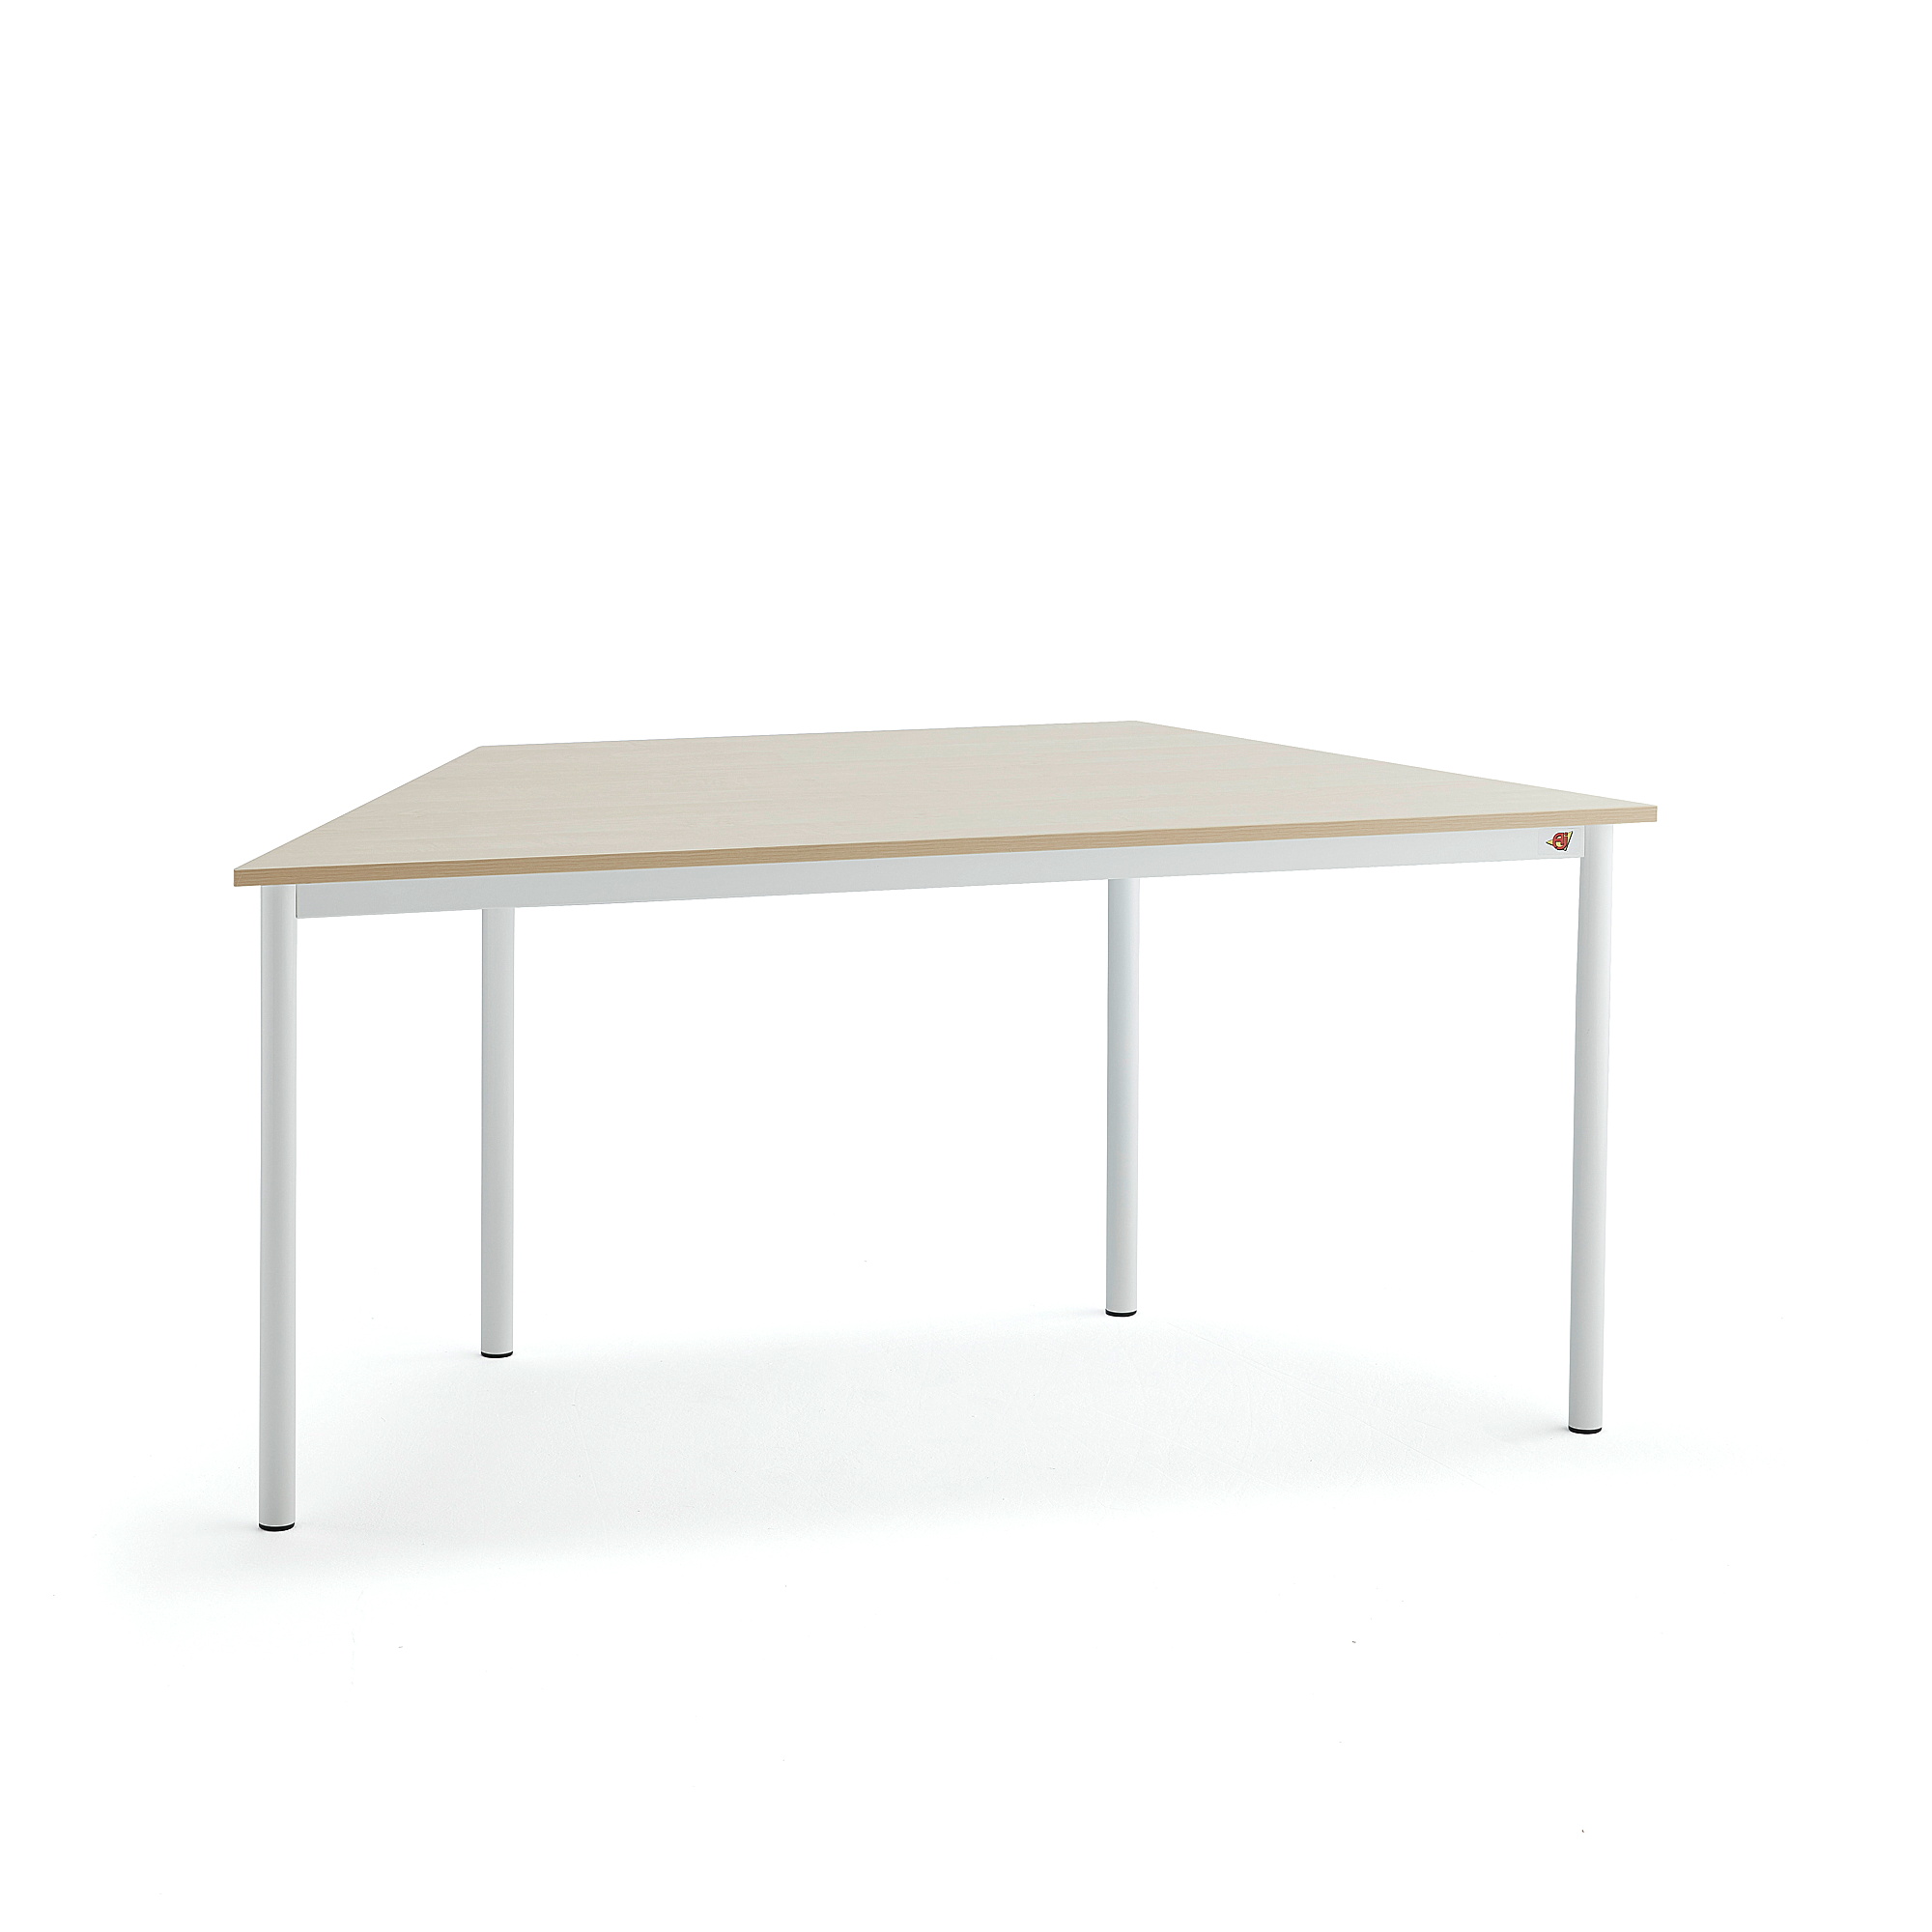 Stůl BORÅS TRAPETS, 1600x800x720 mm, bílé nohy, HPL deska, bříza